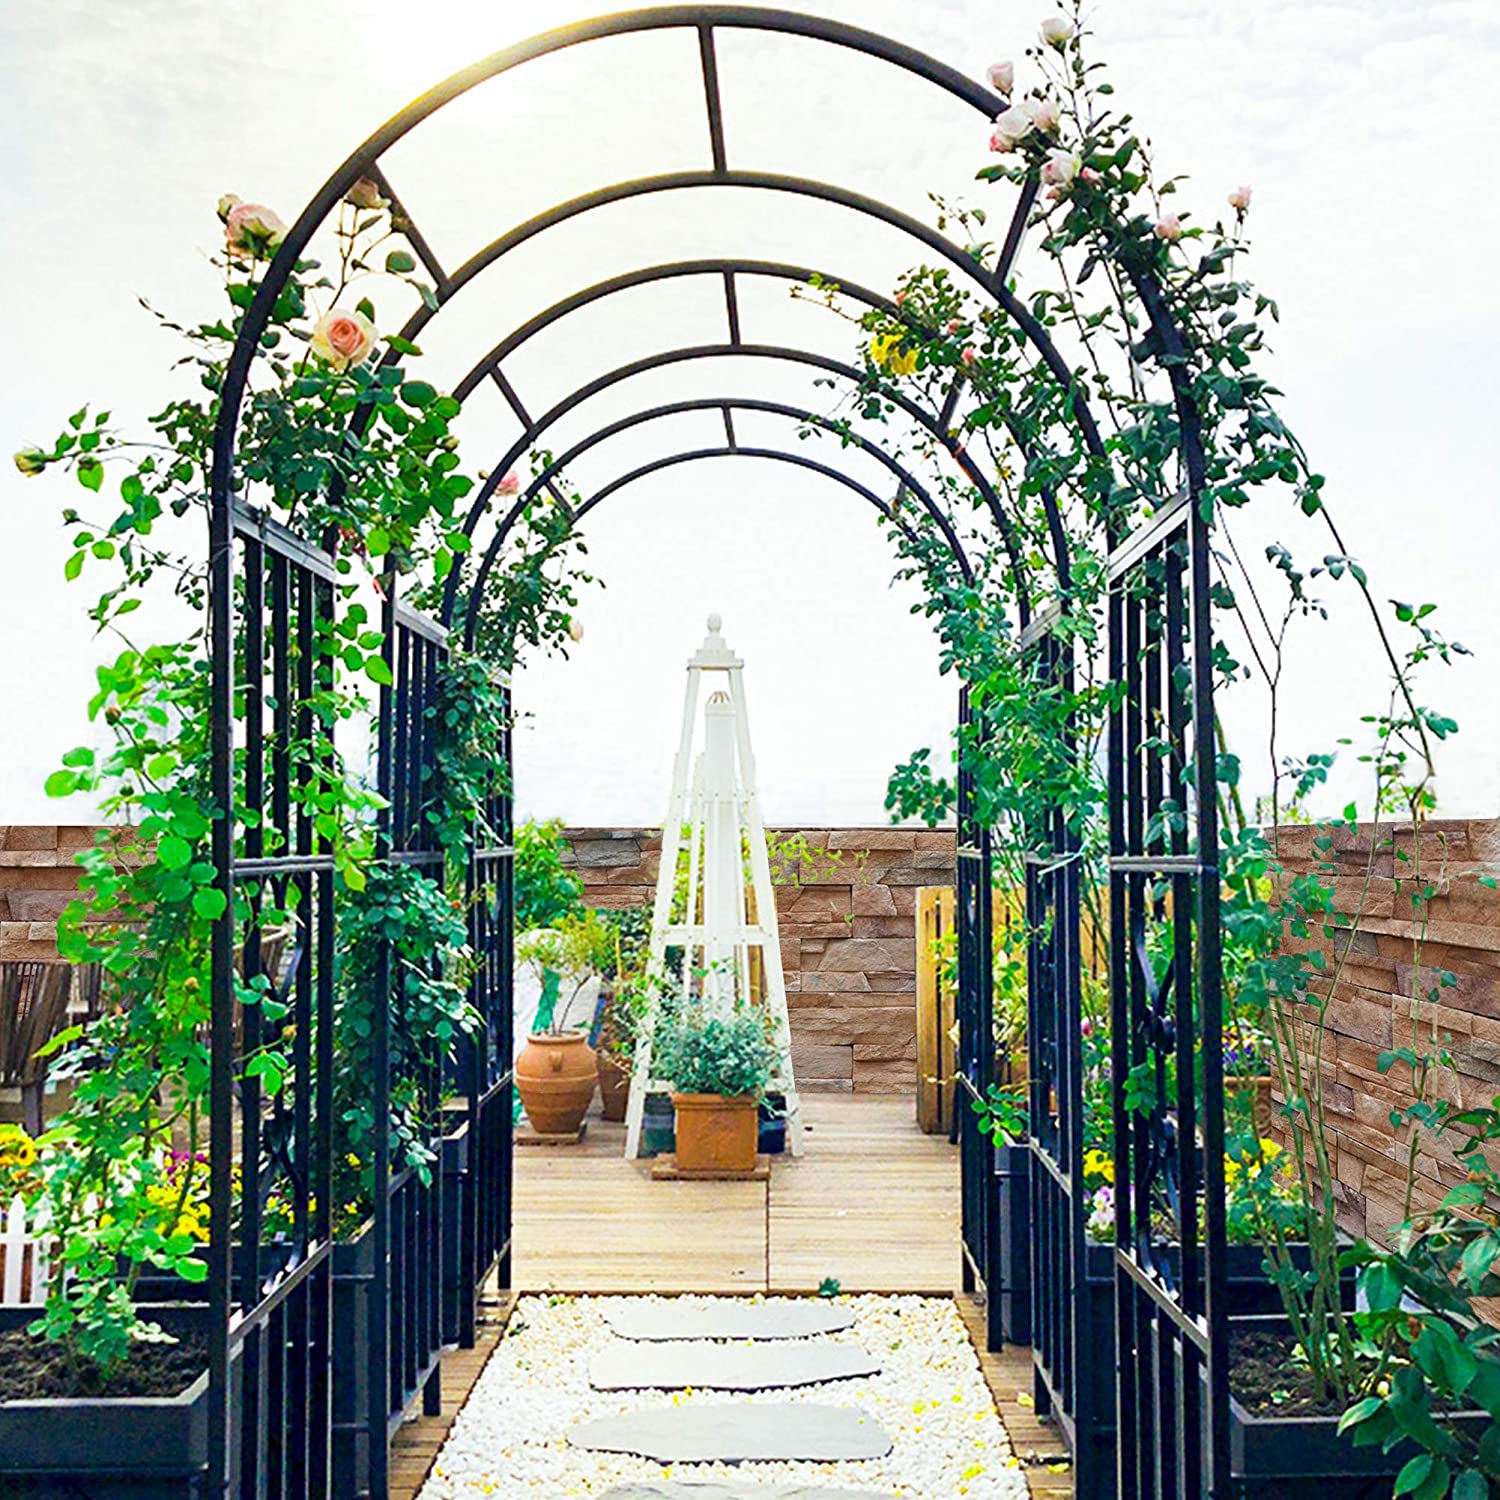 6. LZRS Decorative Outdoor Metal Garden Arch